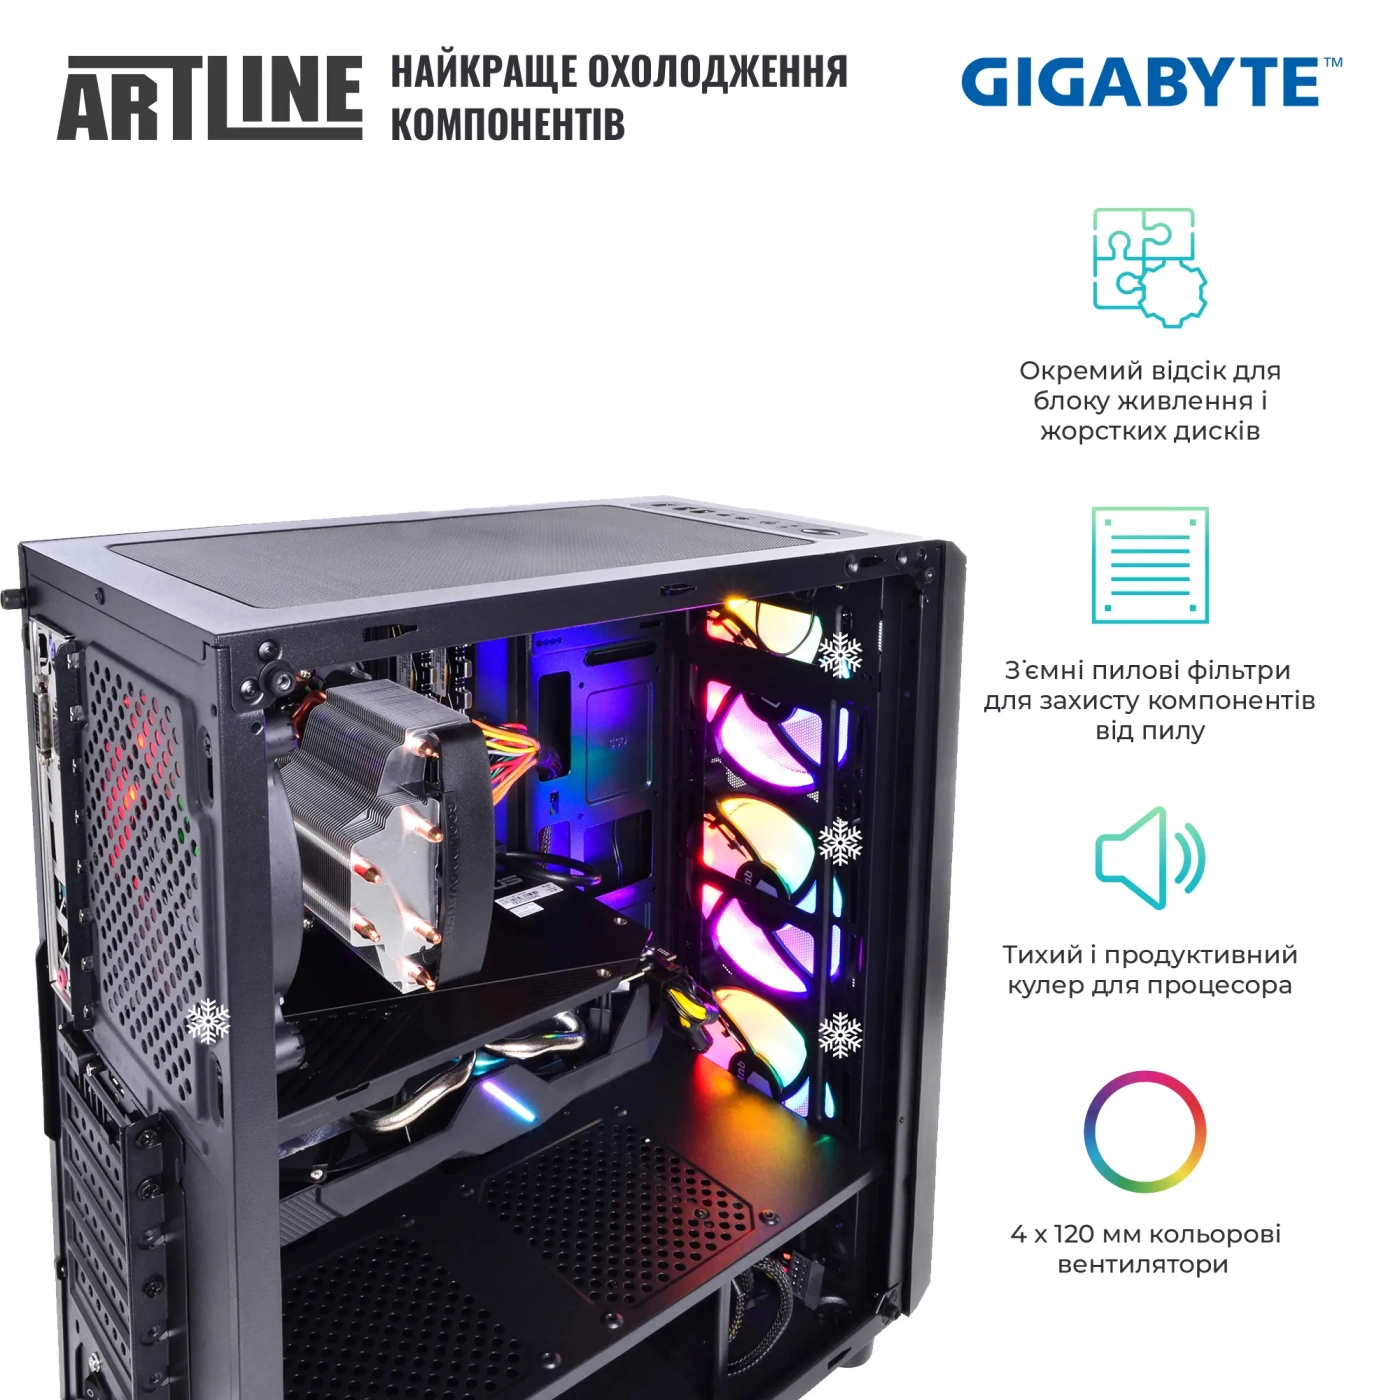 Купить Компьютер ARTLINE Gaming X49v17GGB GIGABYTE Special Edition (X49v17GGB) - фото 3